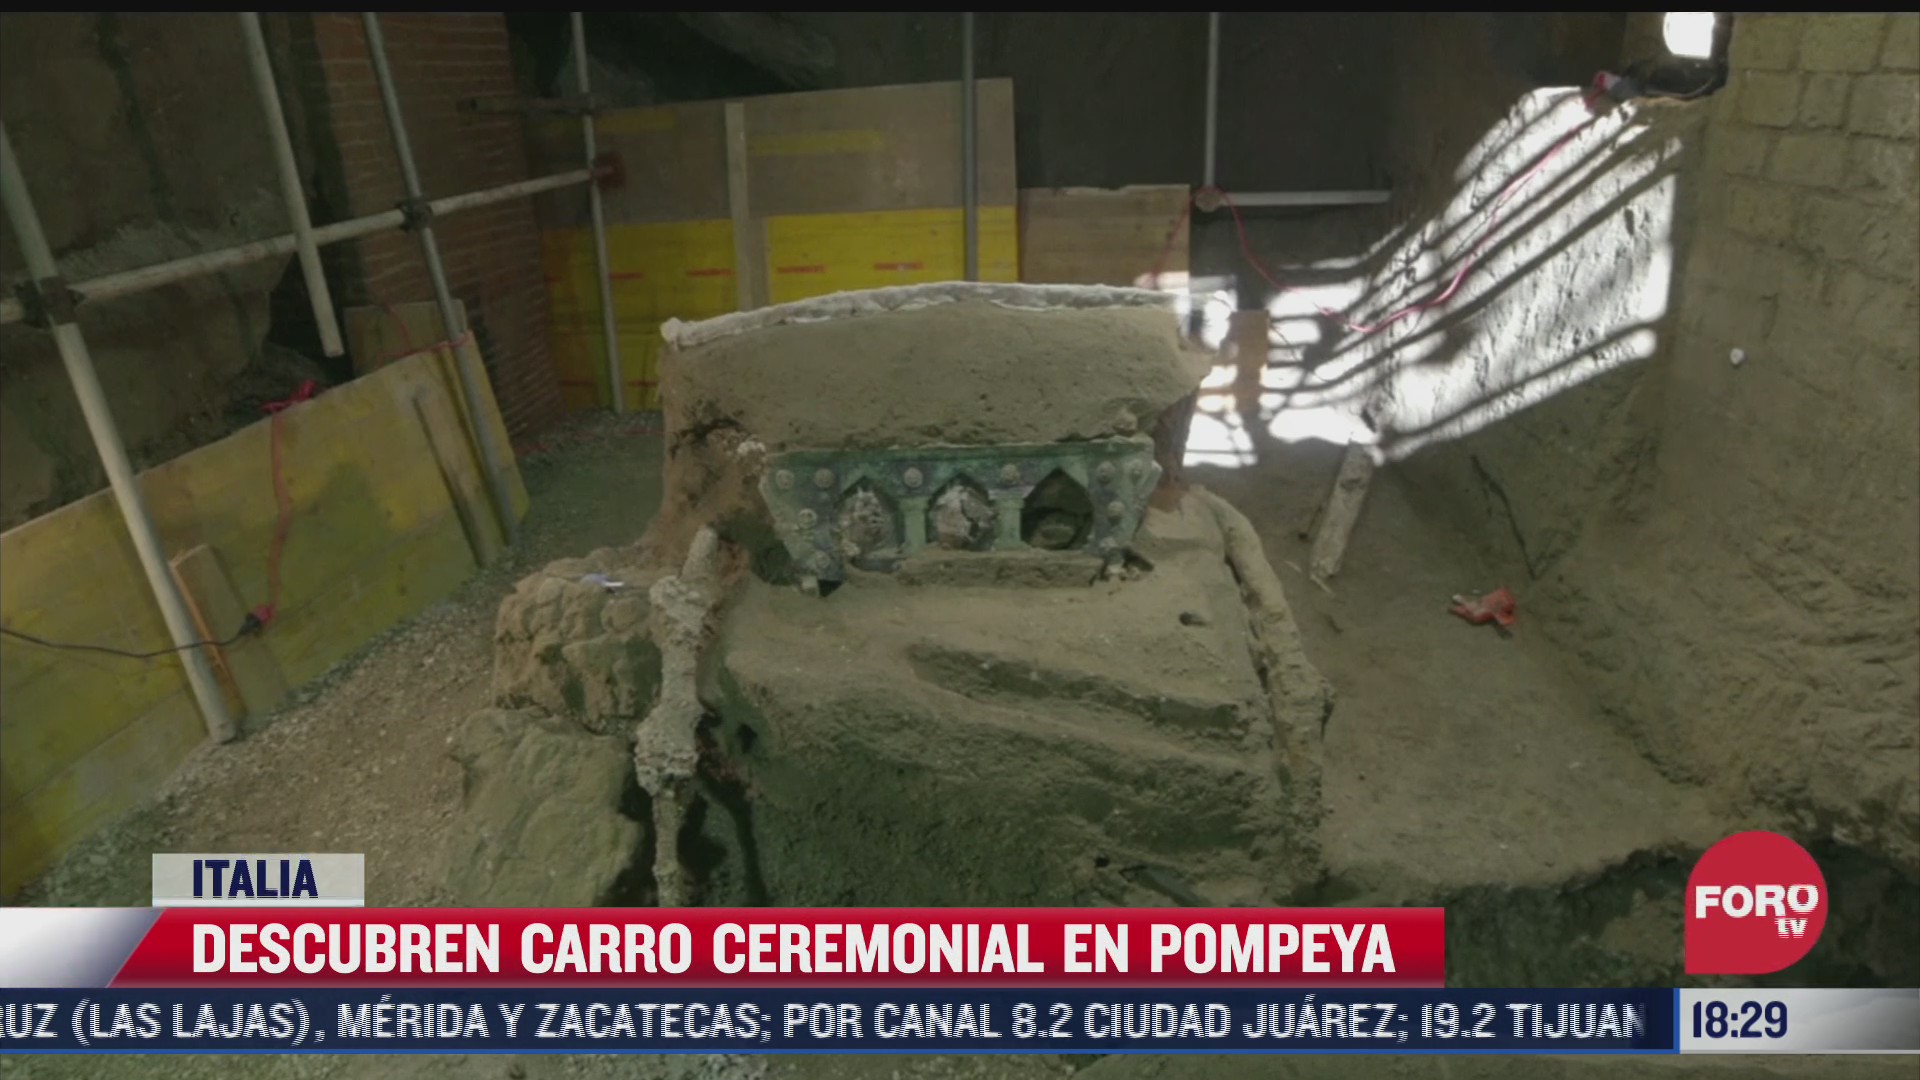 descubren carro ceremonial en pompeya en italia